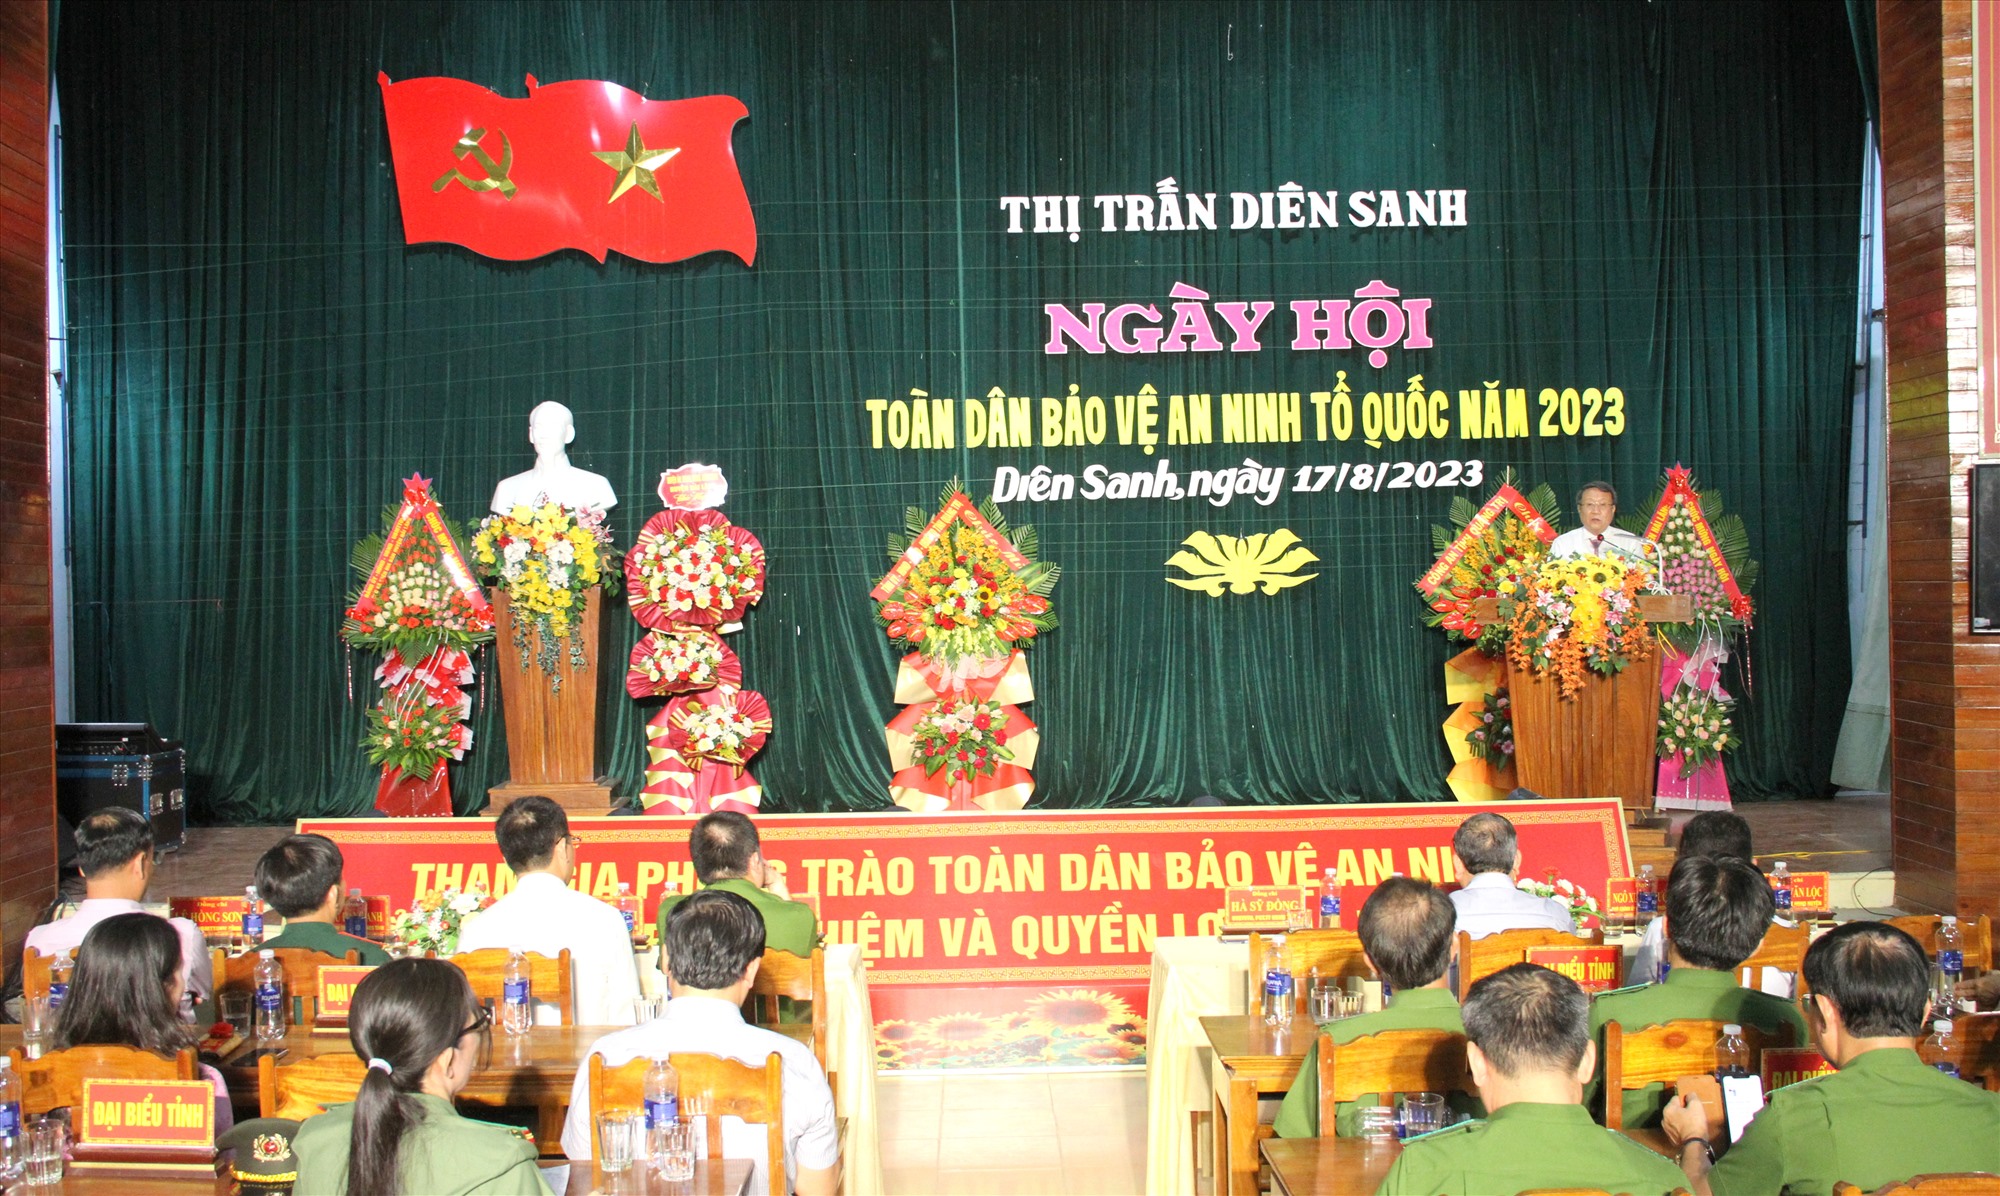 Phó Chủ tịch Thường trực UBND tỉnh Hà Sỹ Đồng phát biểu tại ngày hội - Ảnh: MĐ